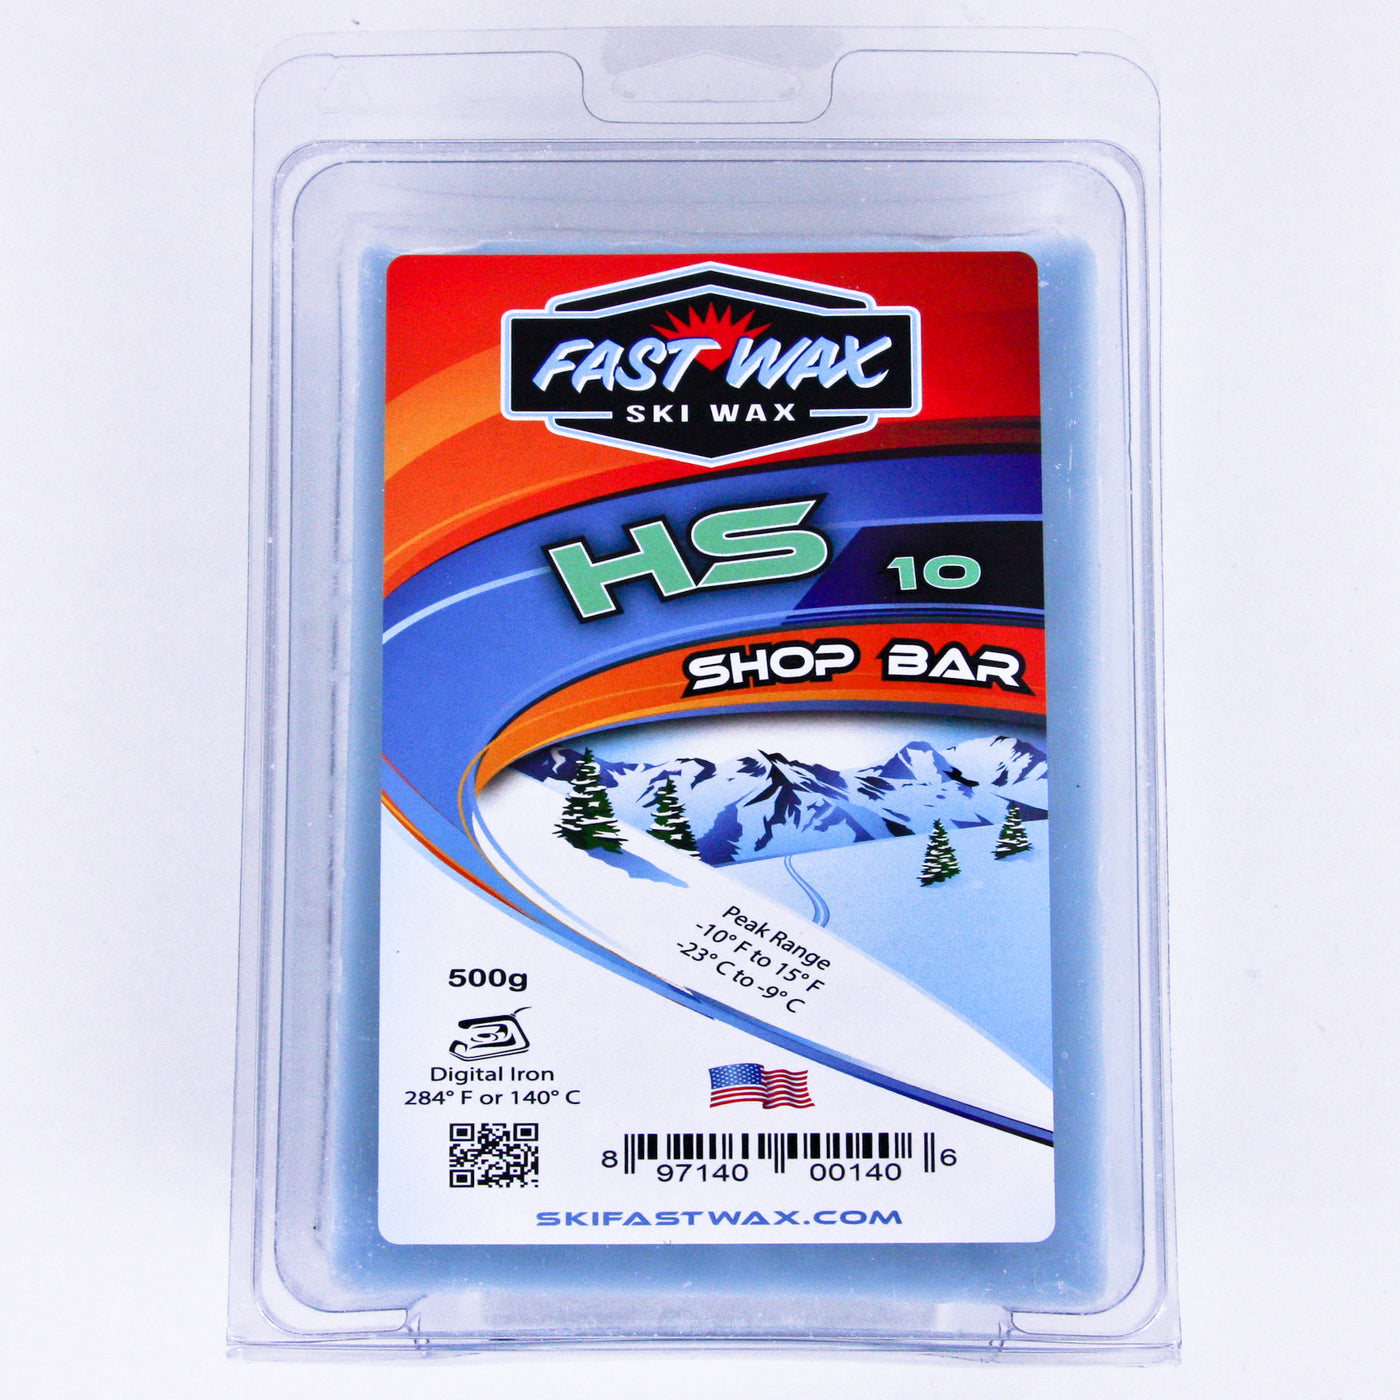 Fast Wax HS 10 Teal - 500g SKI & SNOWBOARD WAX Fast Wax   